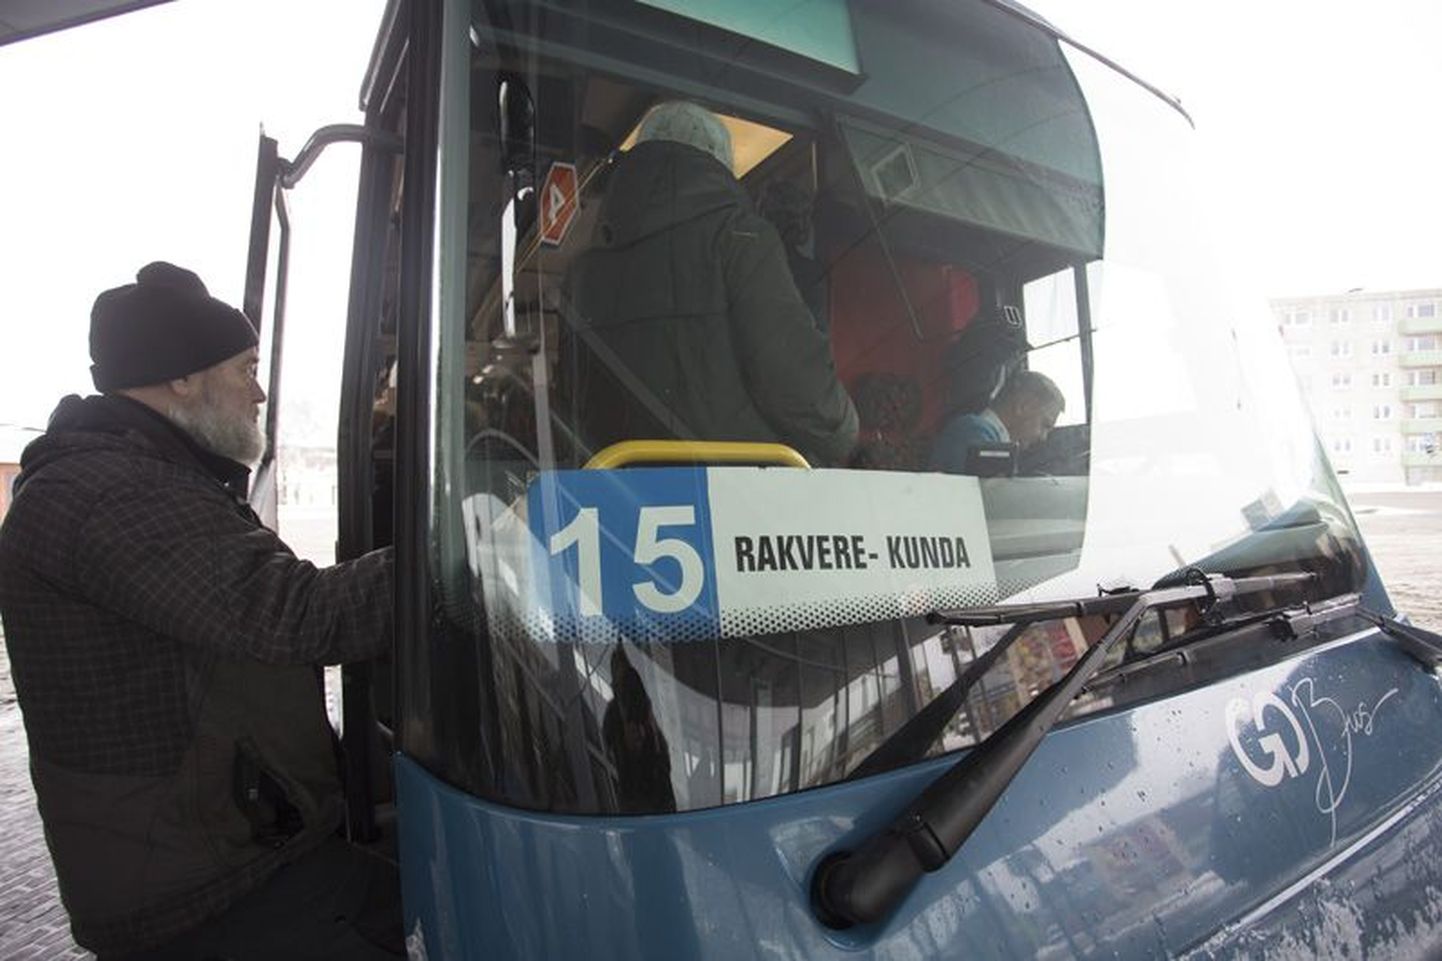 Eelmise aasta lõpuni said Lennuki piirkonna eakad Rakvere linna piires tasuta sõita Rakvere-Kunda bussiga.